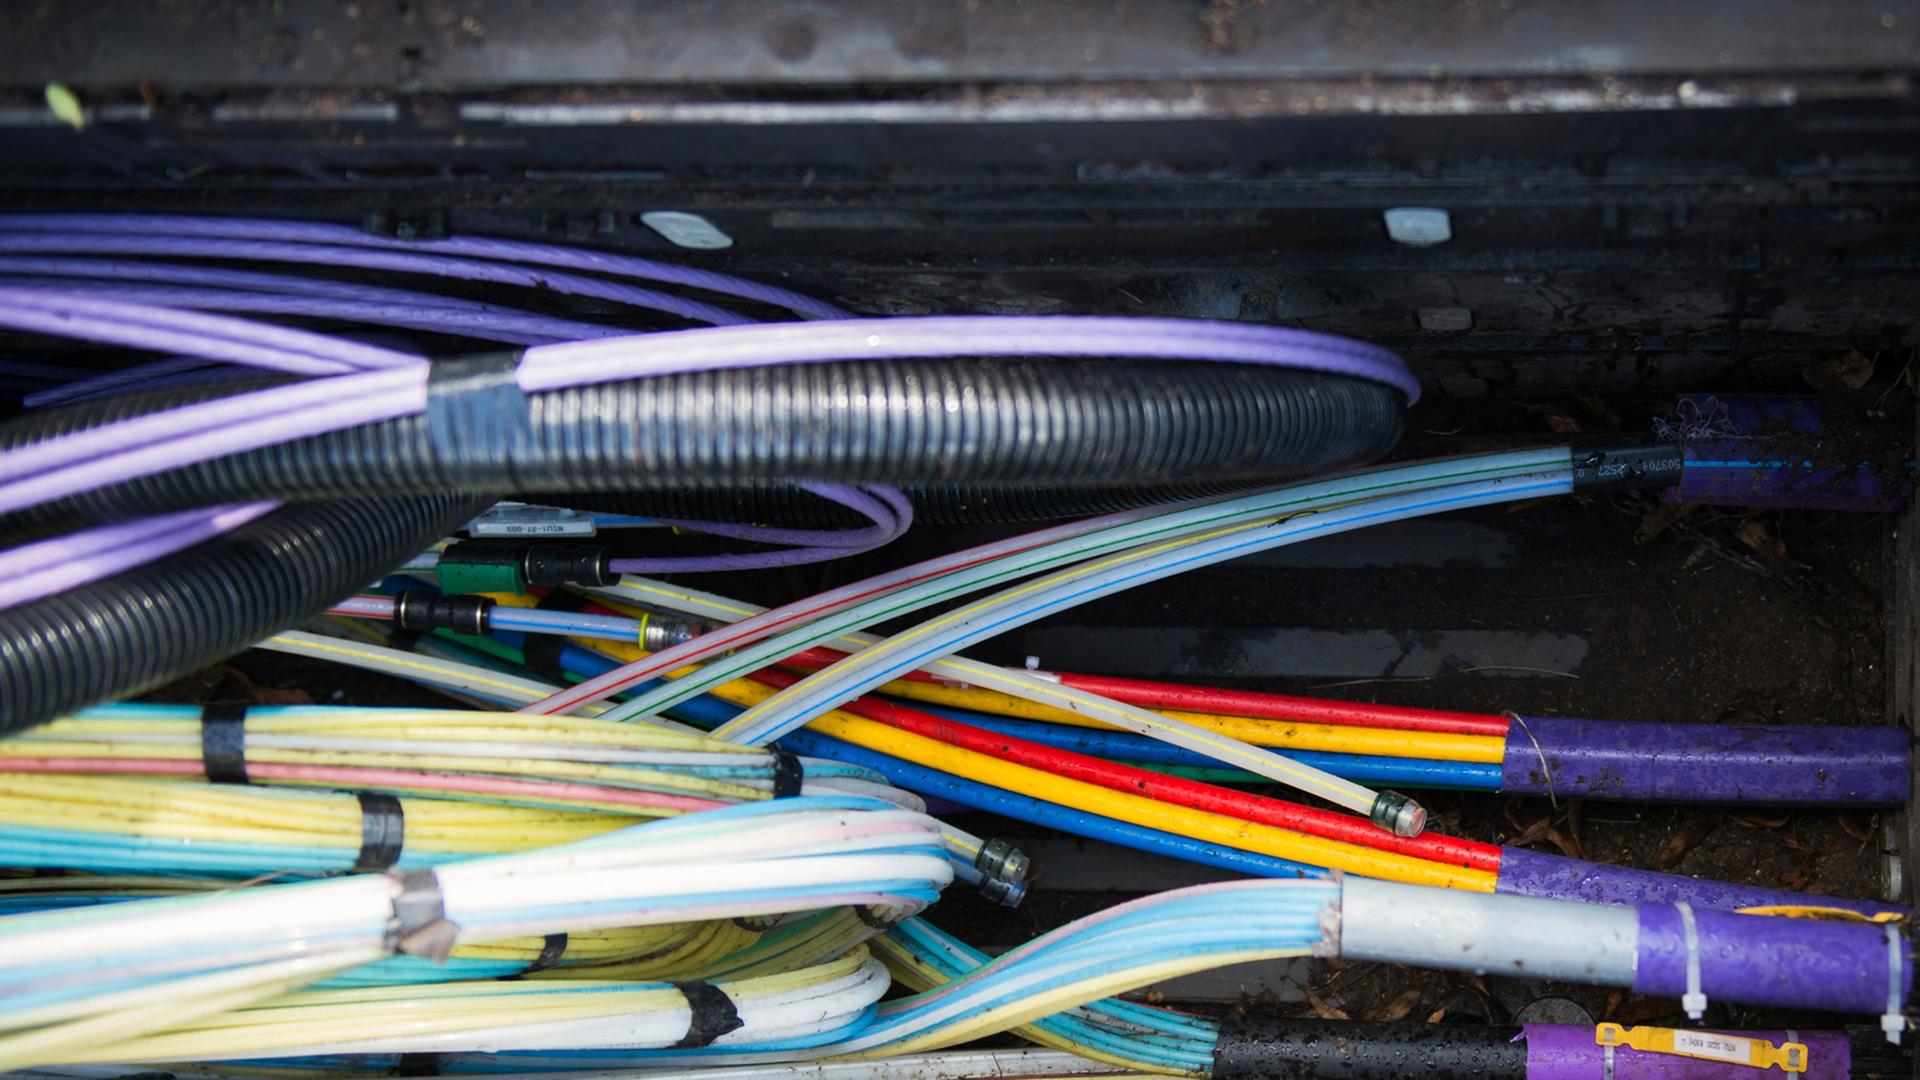 Zahlreiche Glasfaserkabel unter anderem zur Übertragung von Hochgeschwindigkeitsinternet.